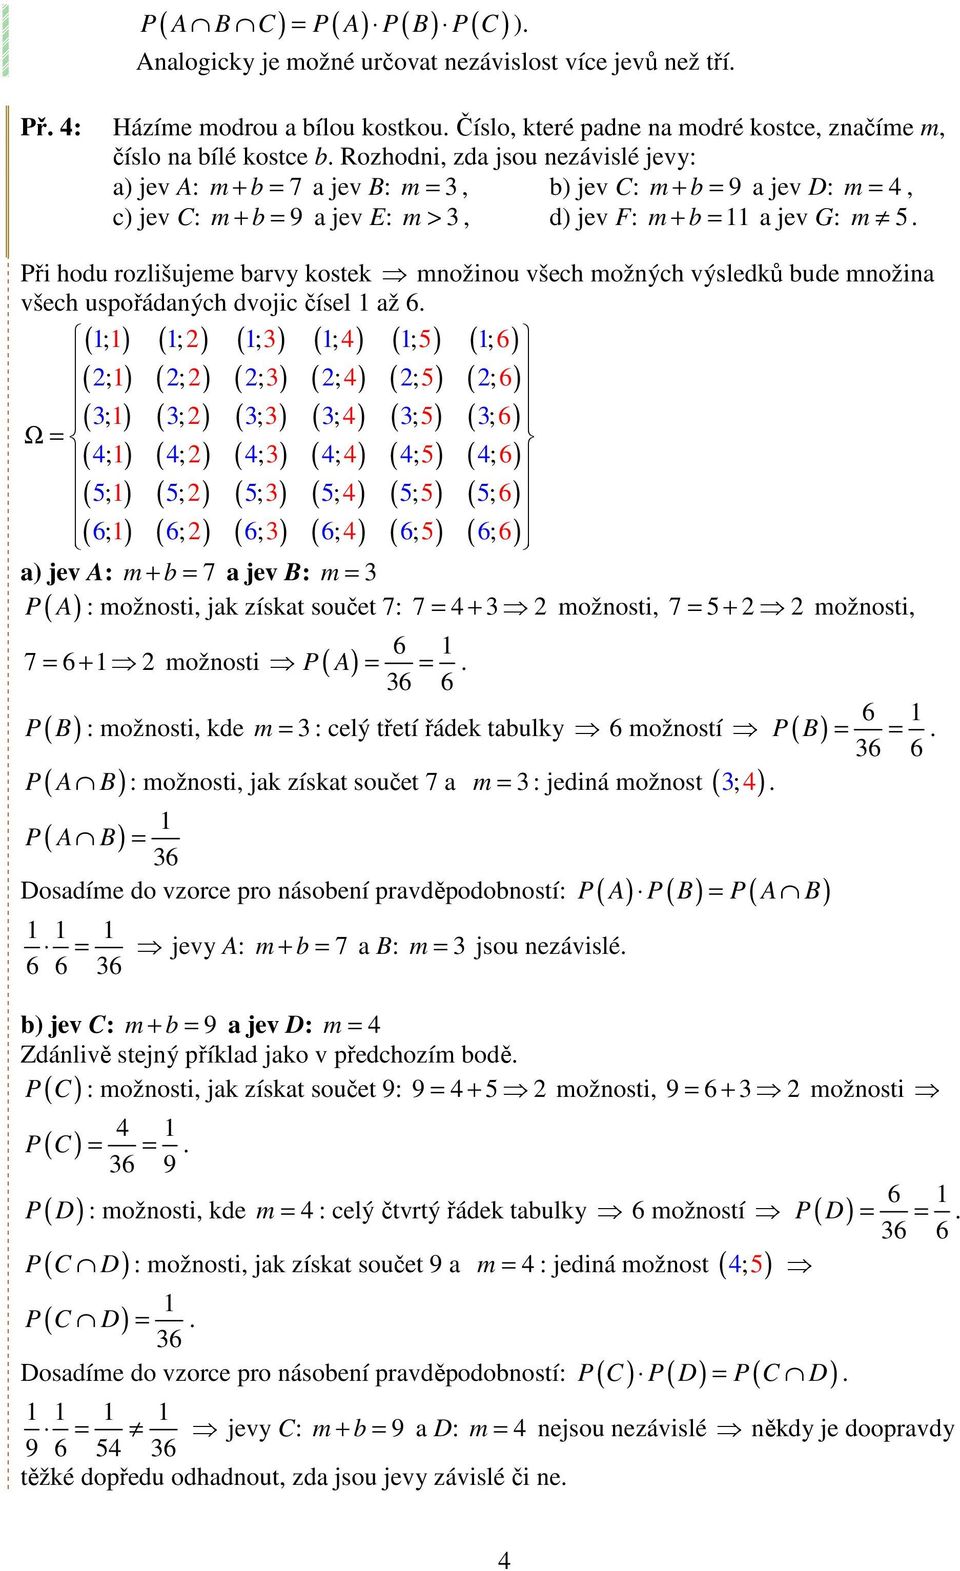 Rozhodni, zda jsou nezávislé jevy: a) jev A: m + b = 7 a jev B: m = 3, b) jev C: m + b = 9 a jev D: m = 4, c) jev C: m + b = 9 a jev E: m > 3, d) jev F: m + b = a jev G: m 5.